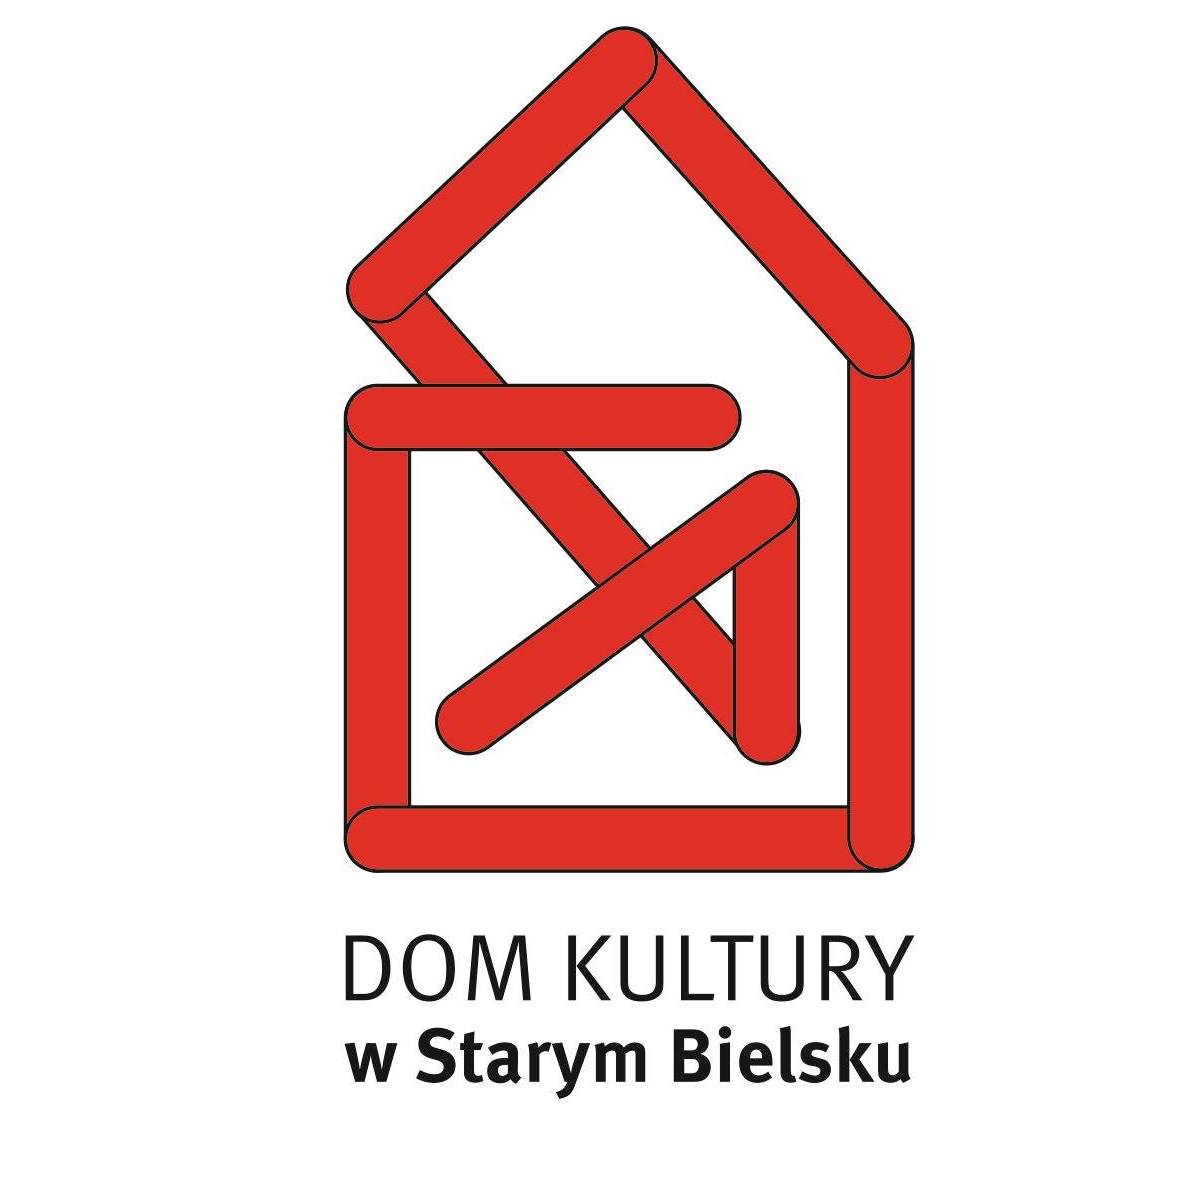  Starobielskie Porządki
 Na zdjęciu logo DK